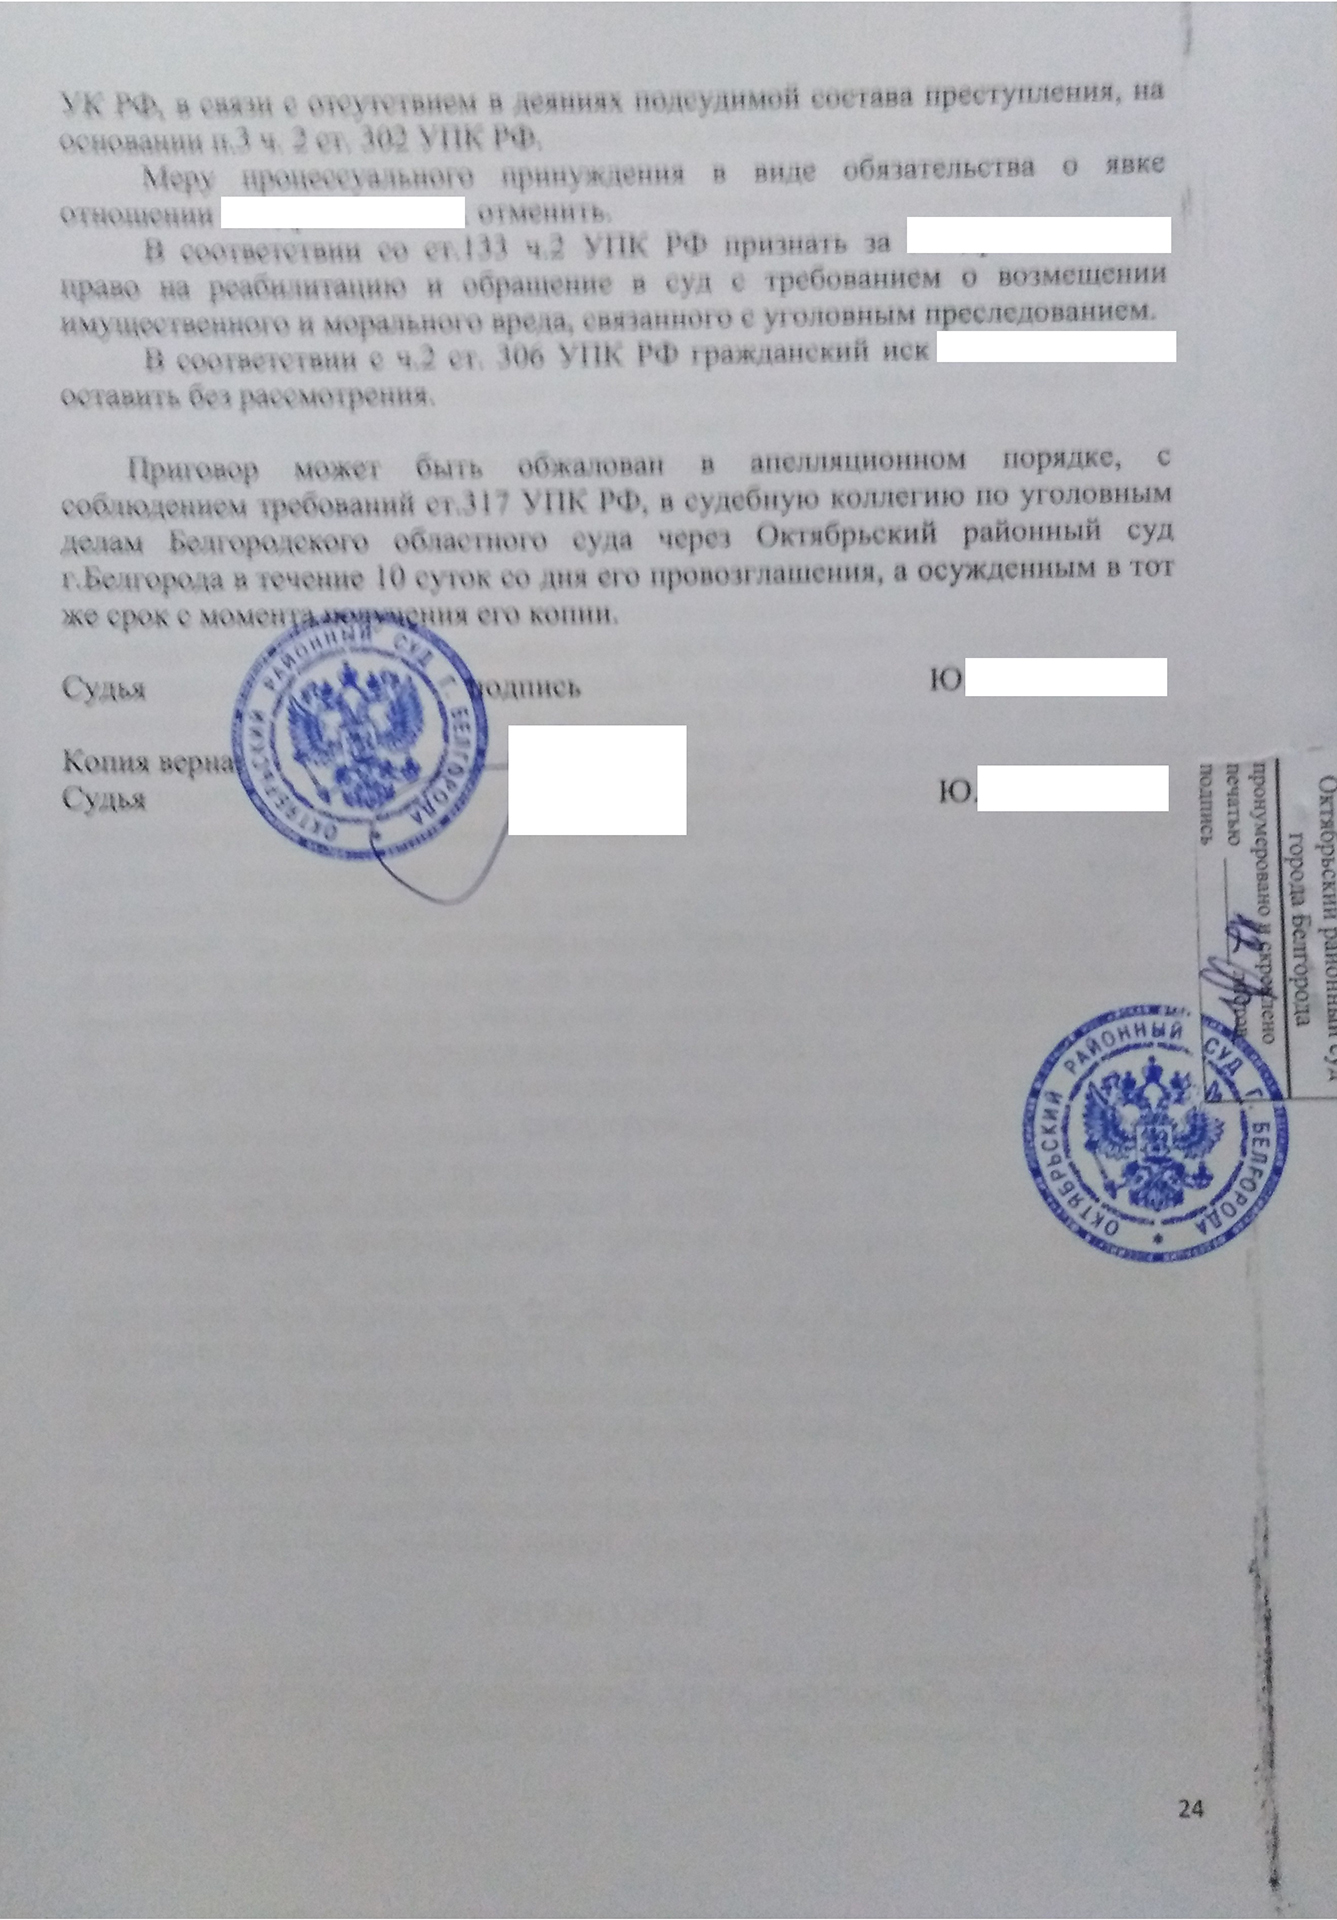 318 ч 1. Оскорбление сотрудника полиции при исполнении статья 318 УК РФ.